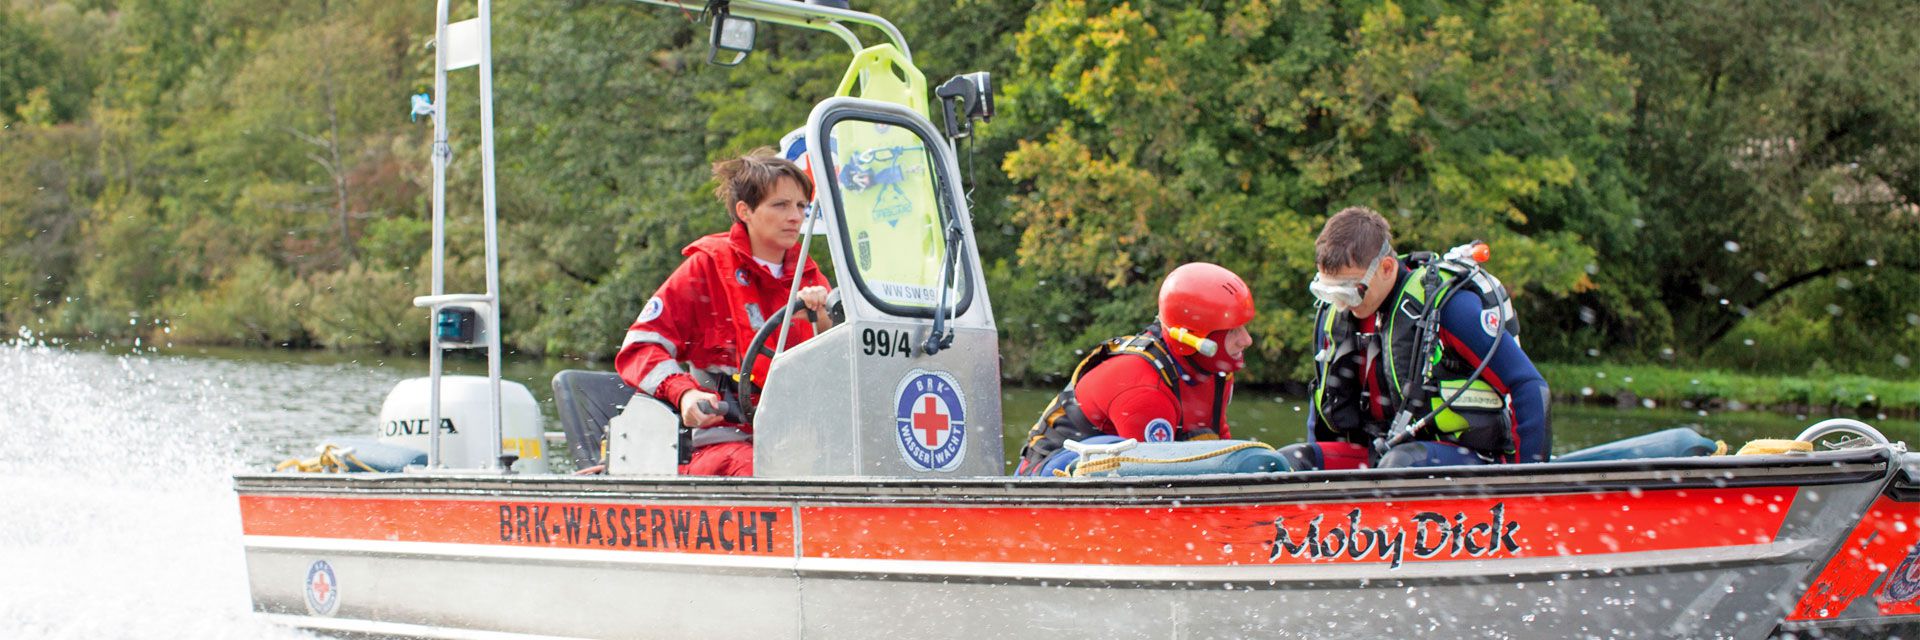 Foto: Zu sehen ist ein Boot der BRK-Wasserwacht in schneller Fahrt. Im vorderen Teil des Bootes sitzen zwei Rettungskräfte. Einer von beiden trägt eine Tacherausrüstung.